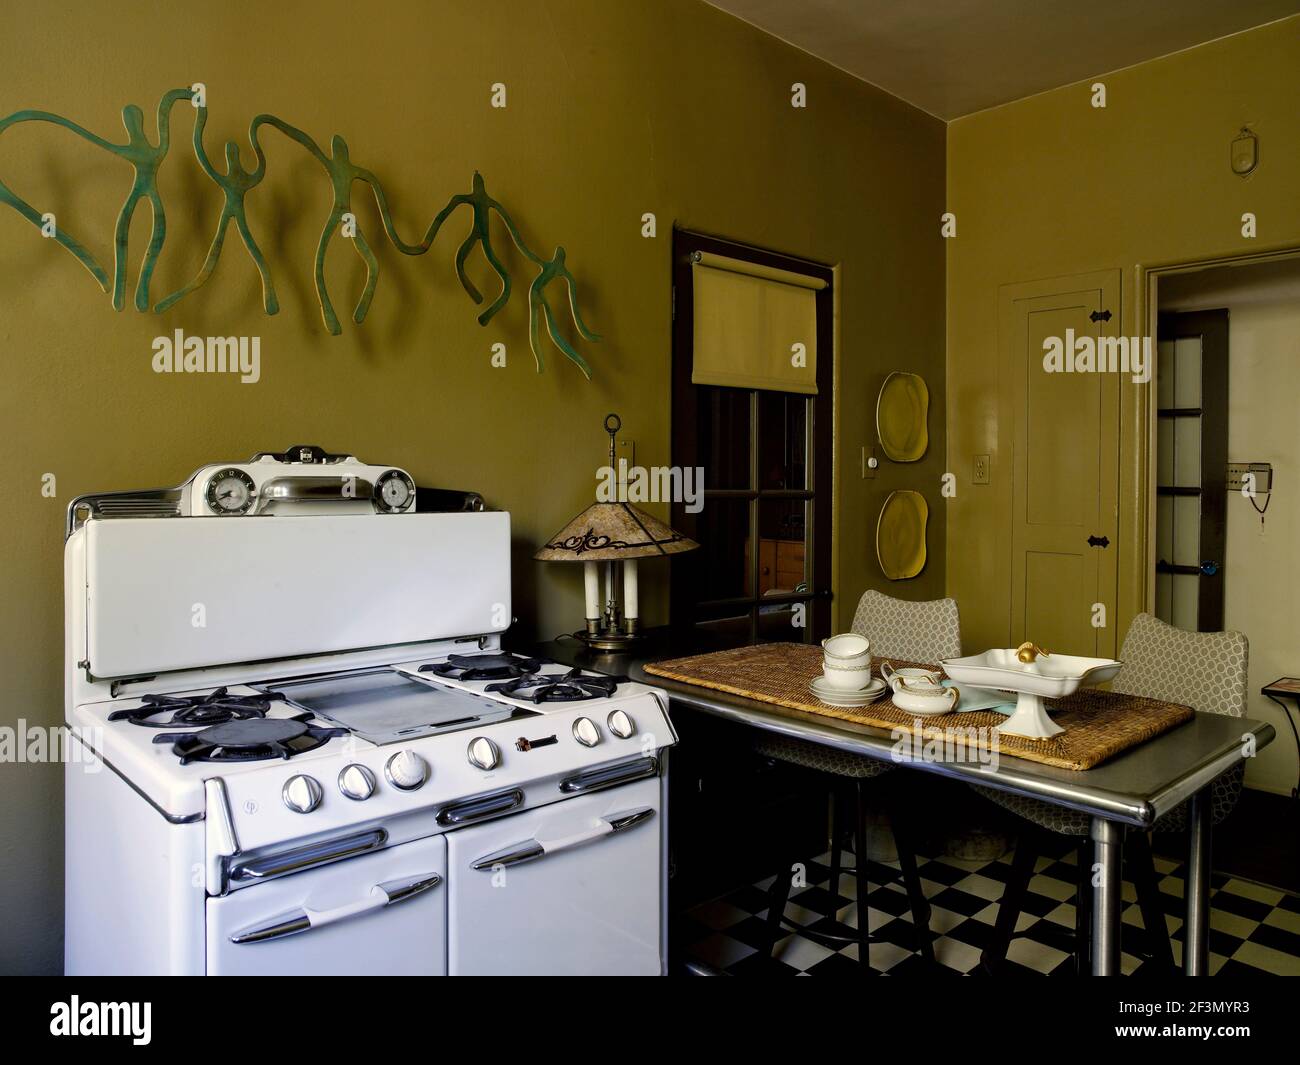 Freistehender Herd Ofen in Küche in USA zu Hause Stockfotografie - Alamy